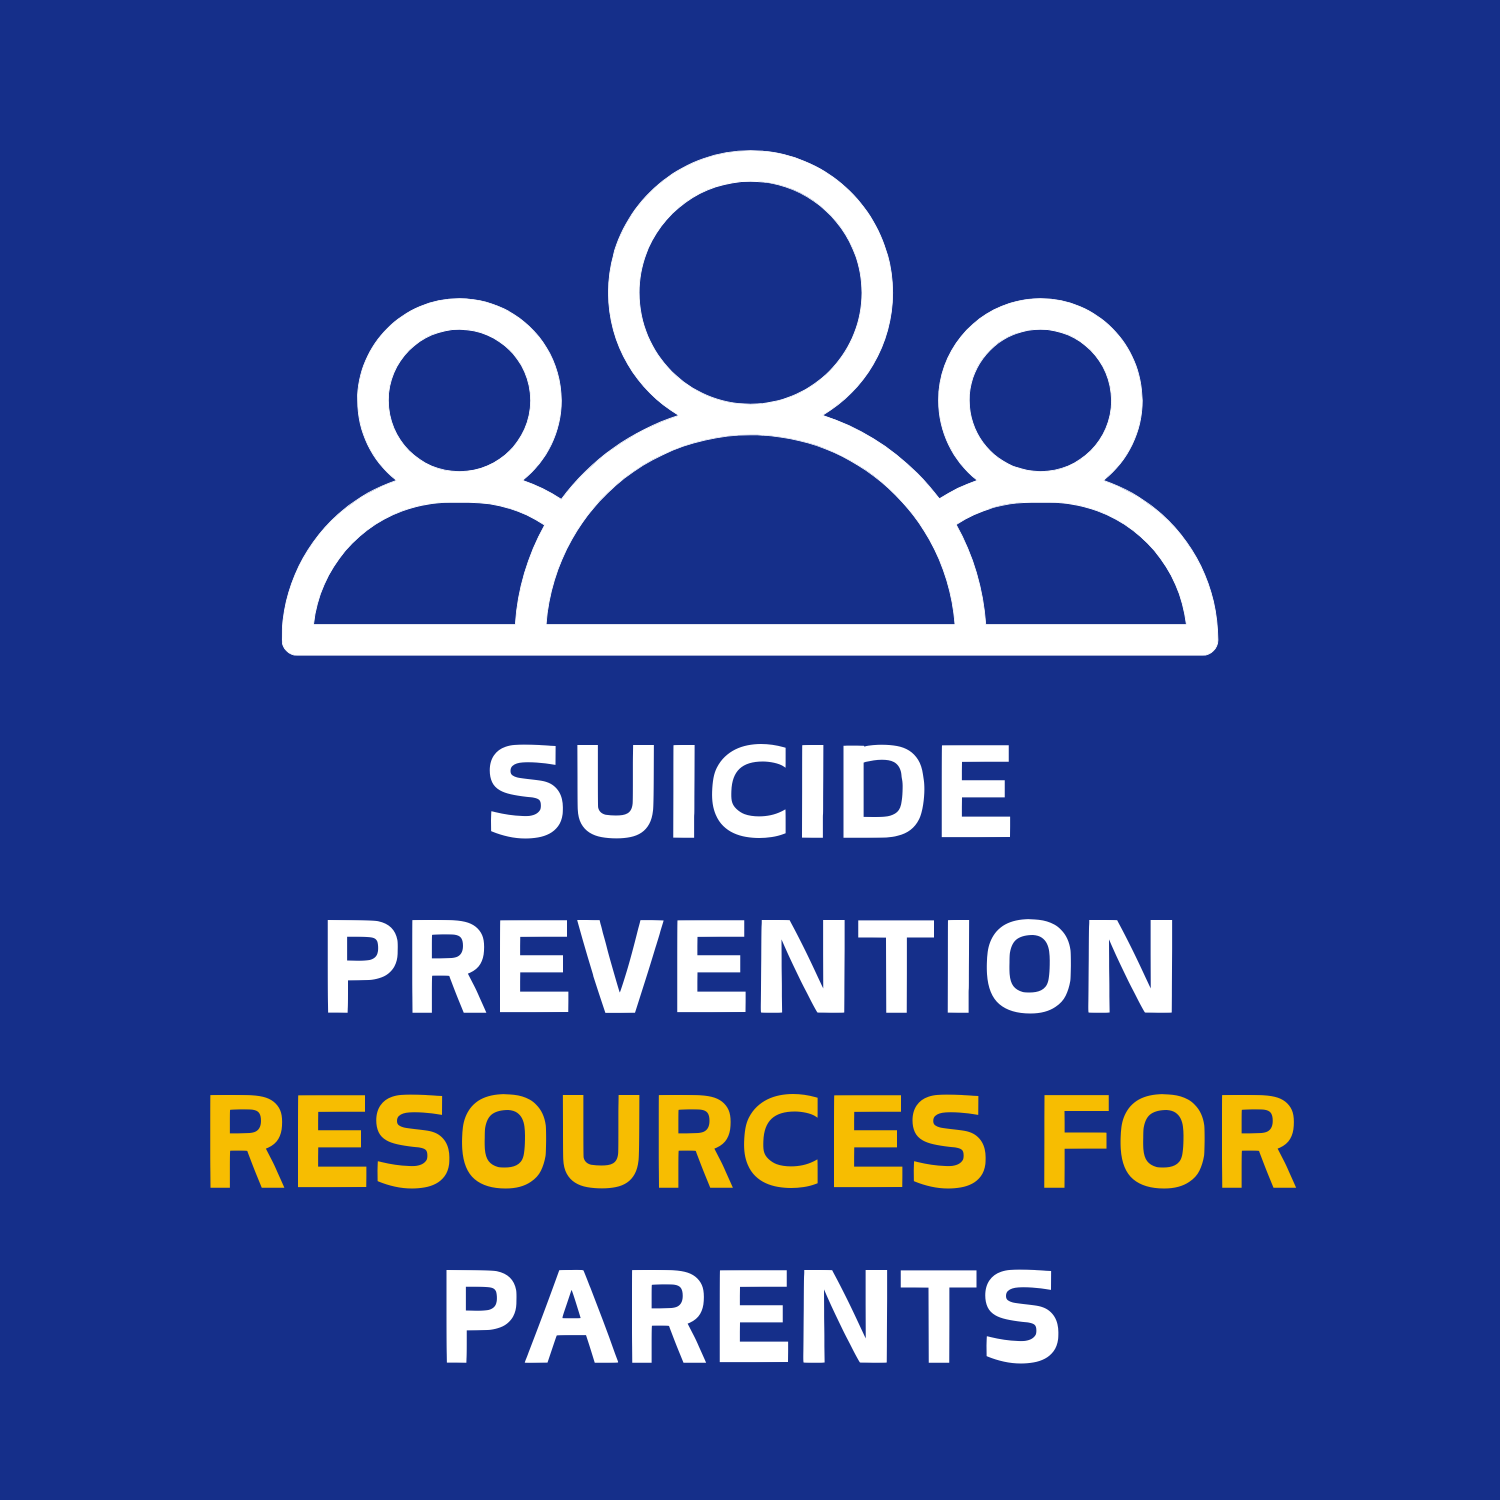 Suicide Prevention Resources for Parents